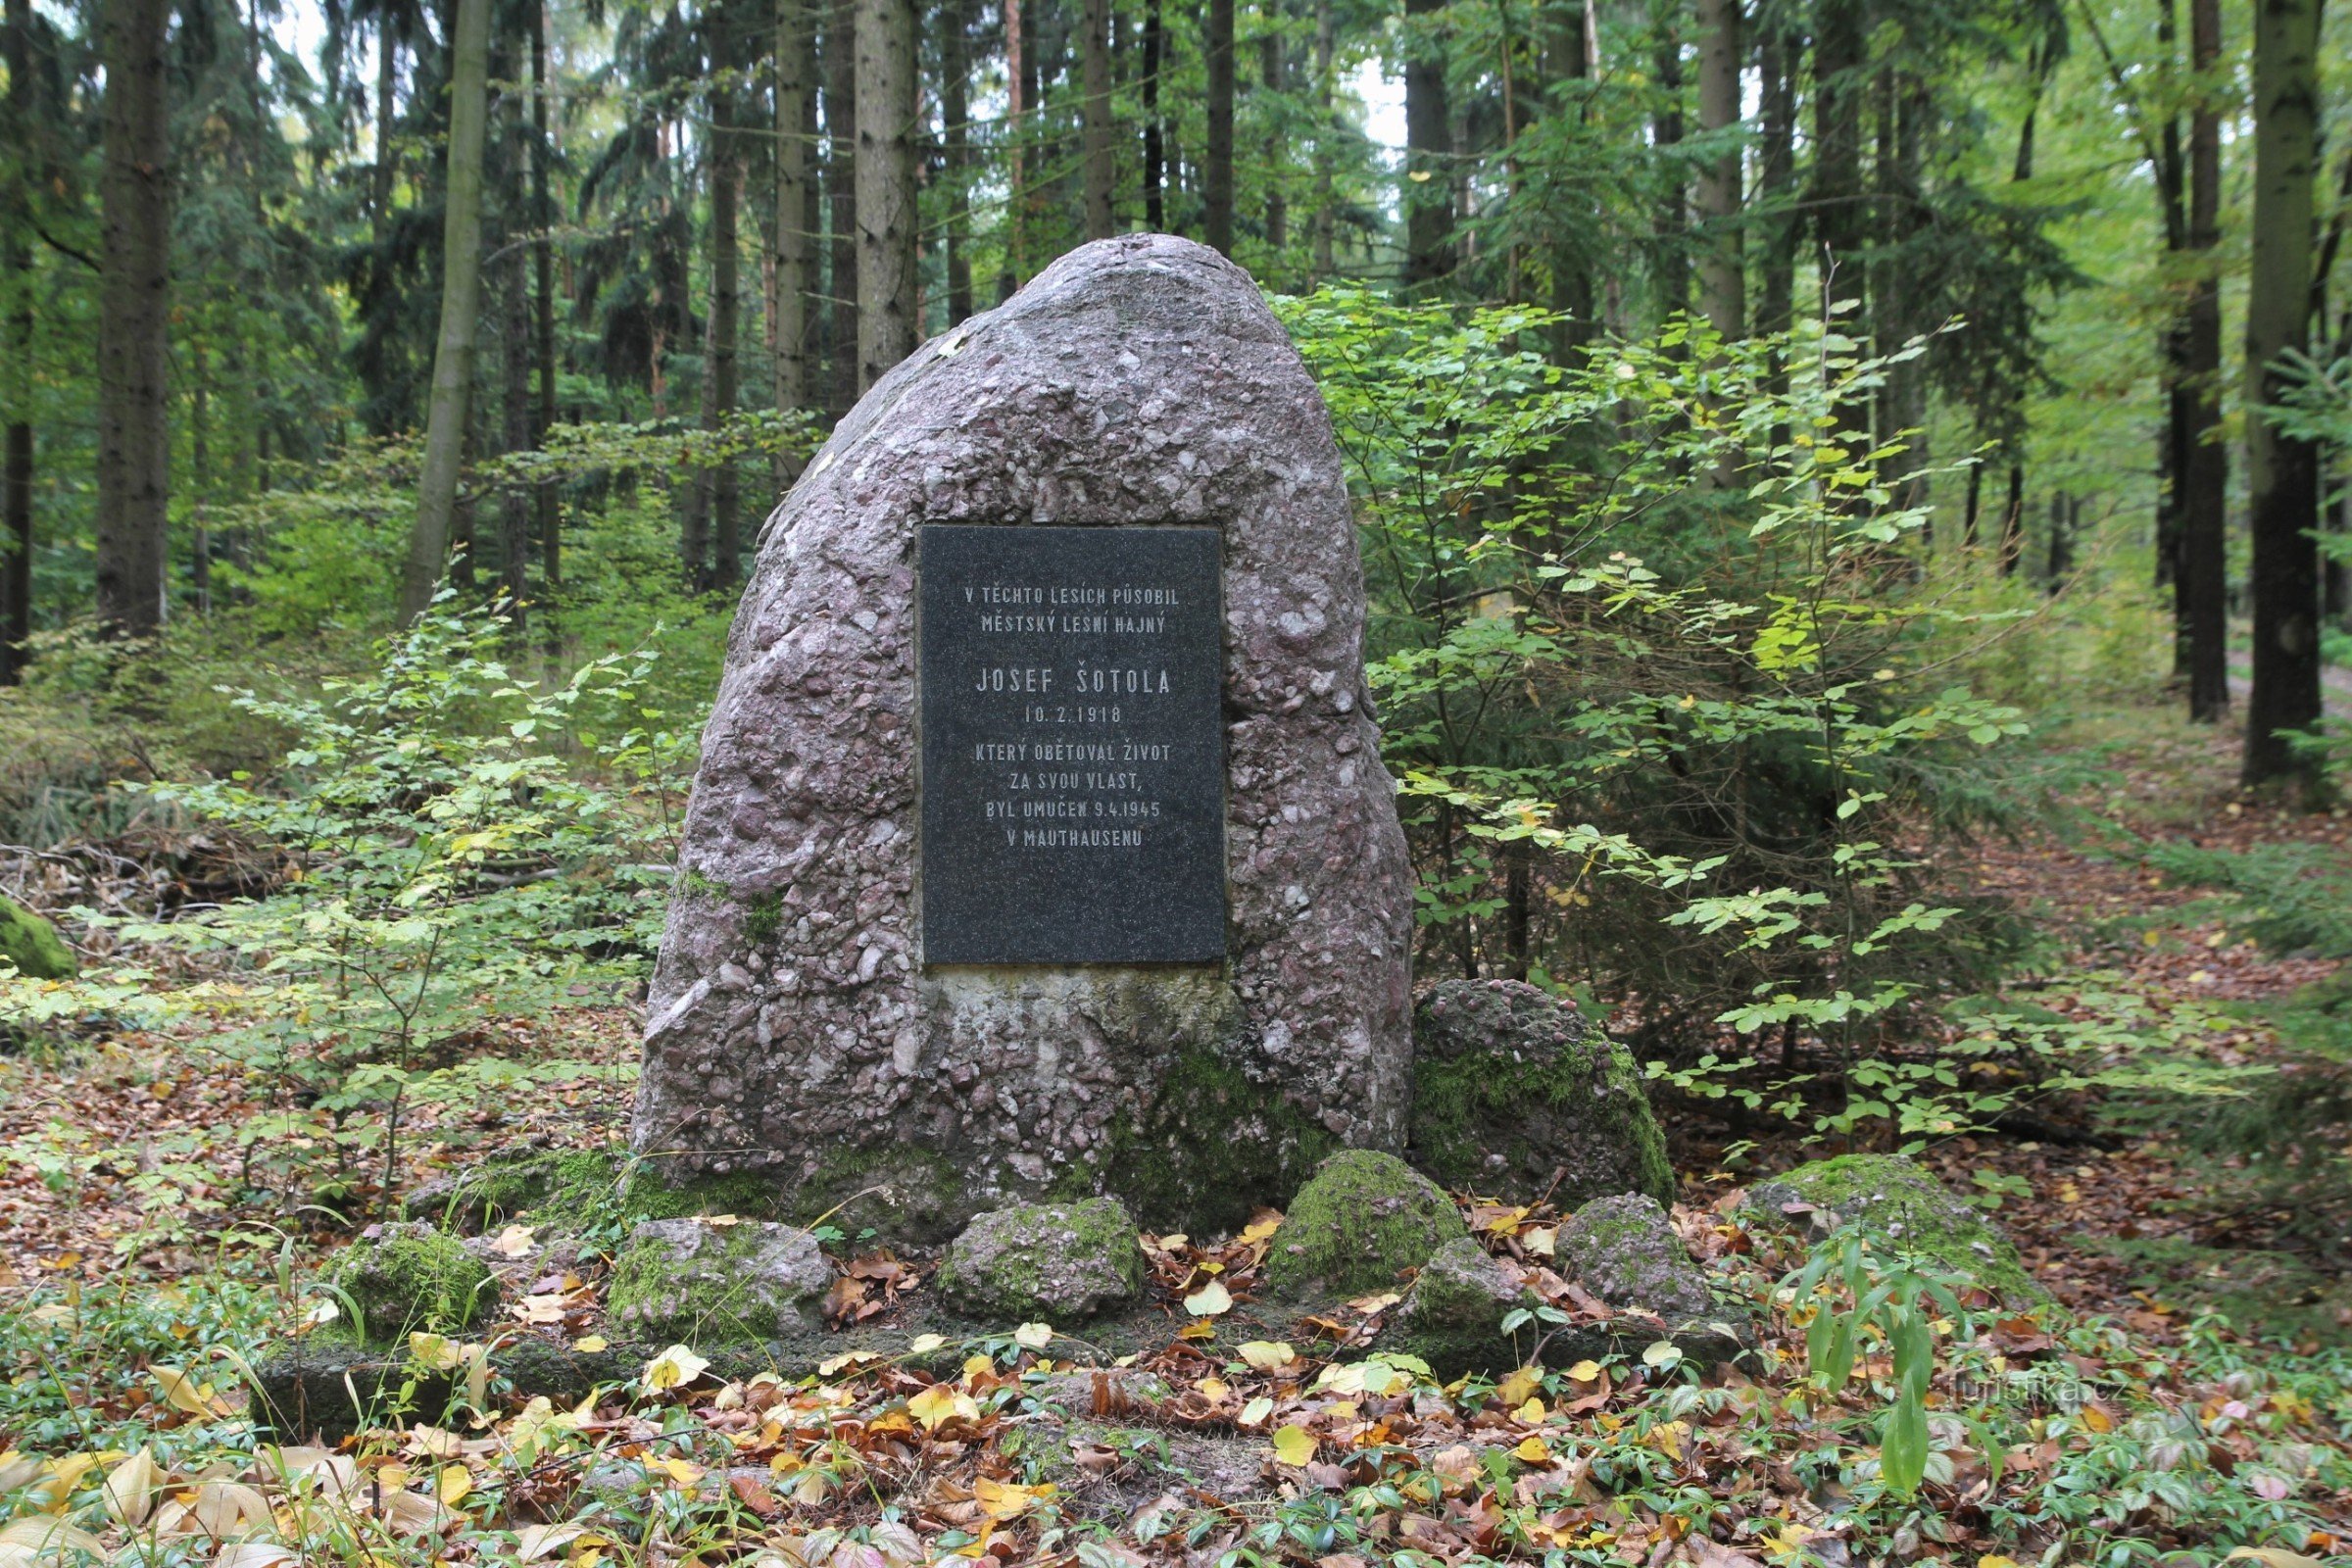 El monumento a Josef Šotola se encuentra en un pequeño claro del bosque